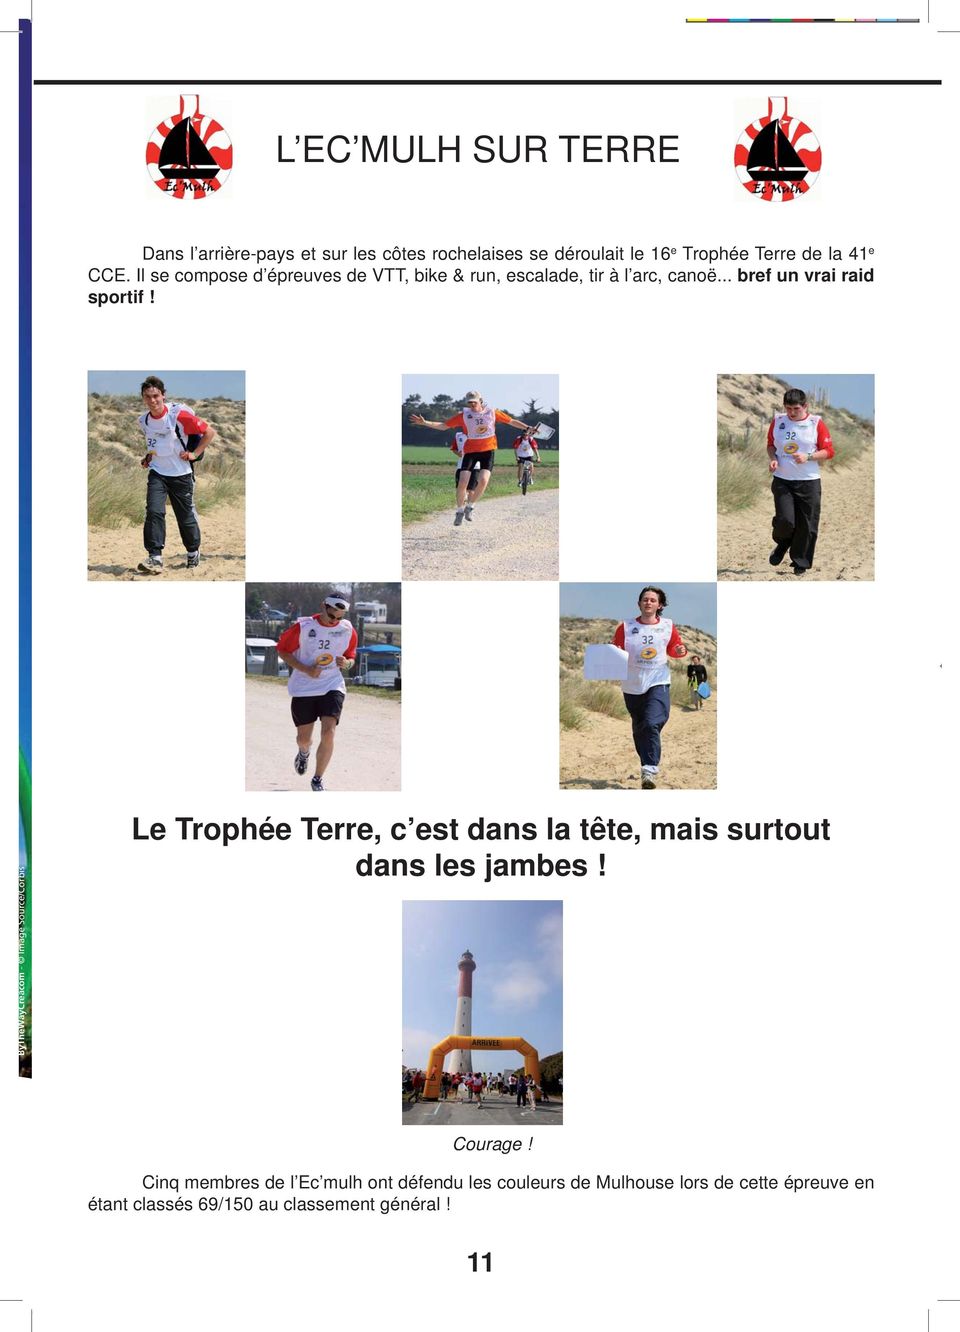 ByTheWayCreacom - Image Source/Corbis Le Trophée Terre, c est dans la tête, mais surtout dans les jambes! Courage!